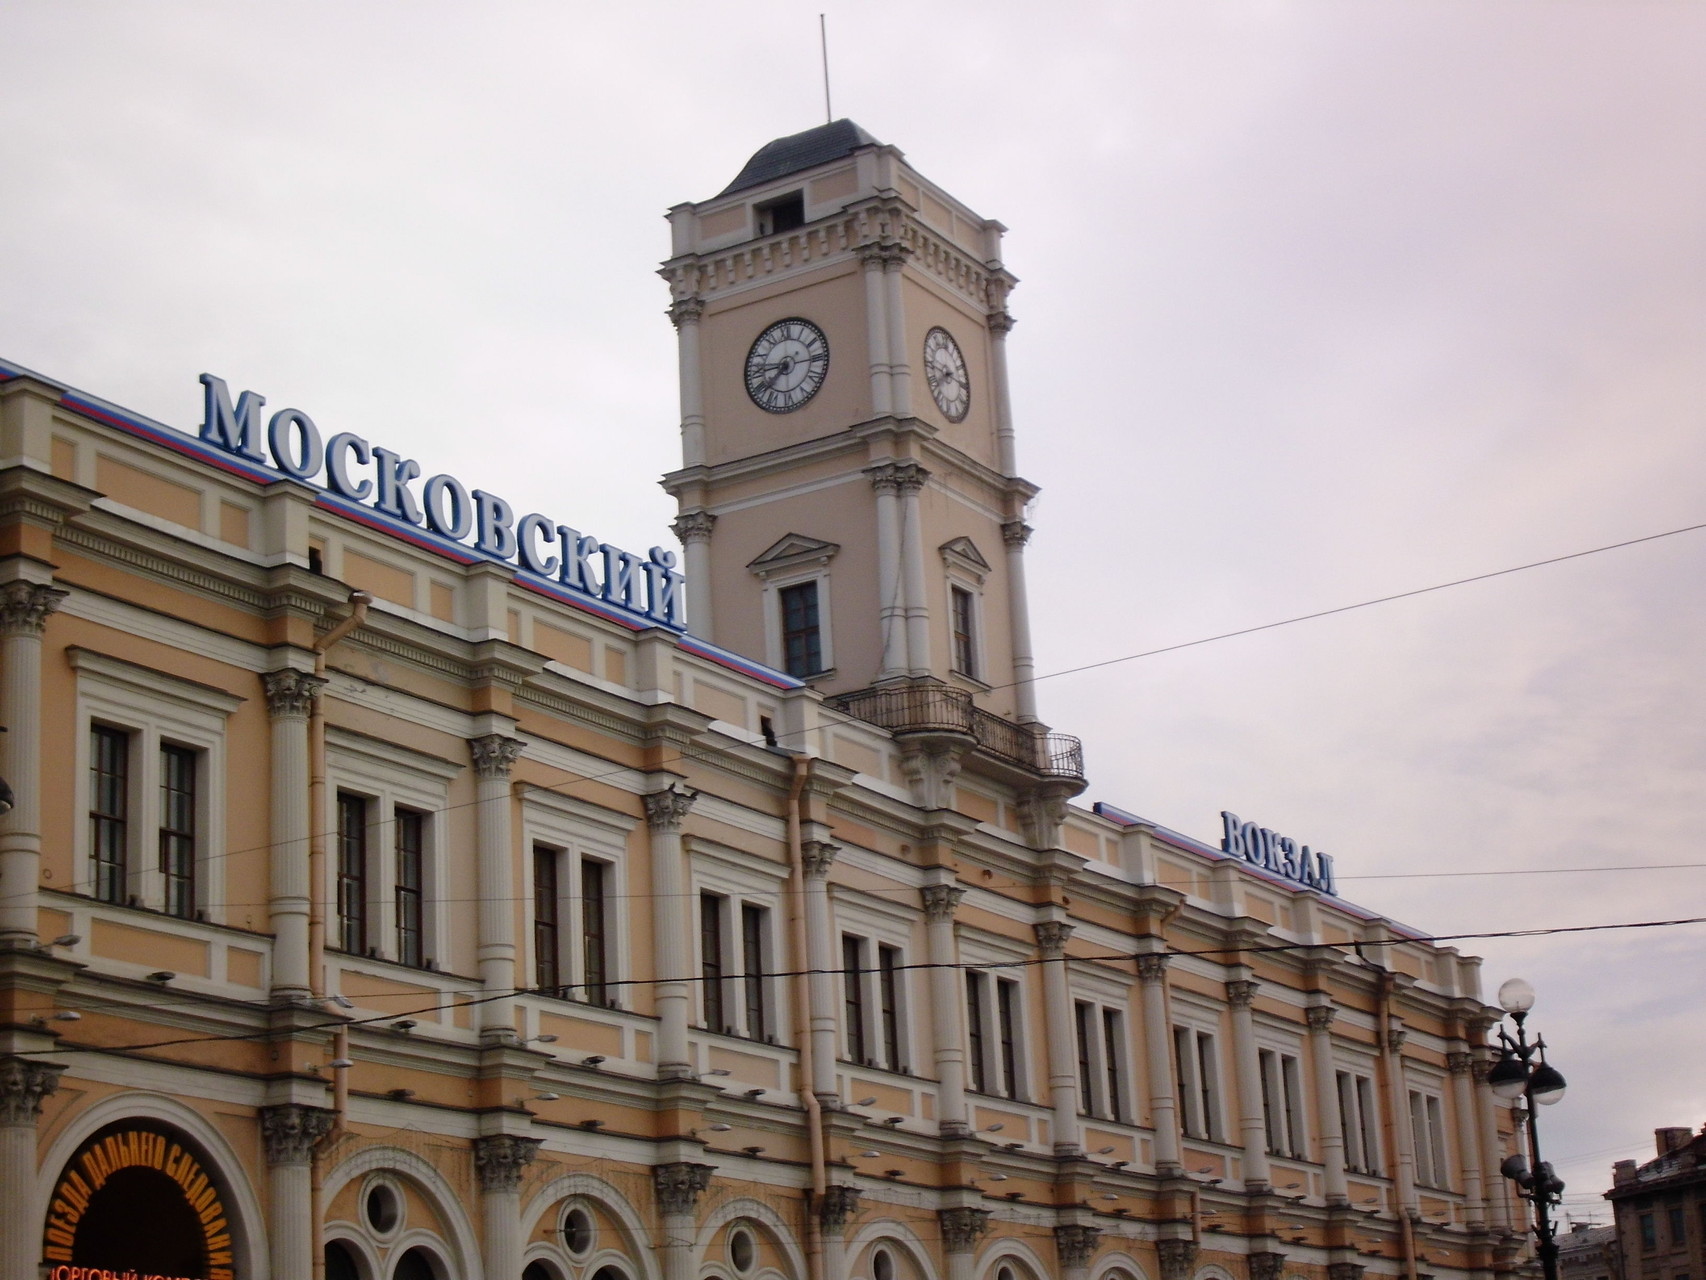 Bahnhof St. Petersburg